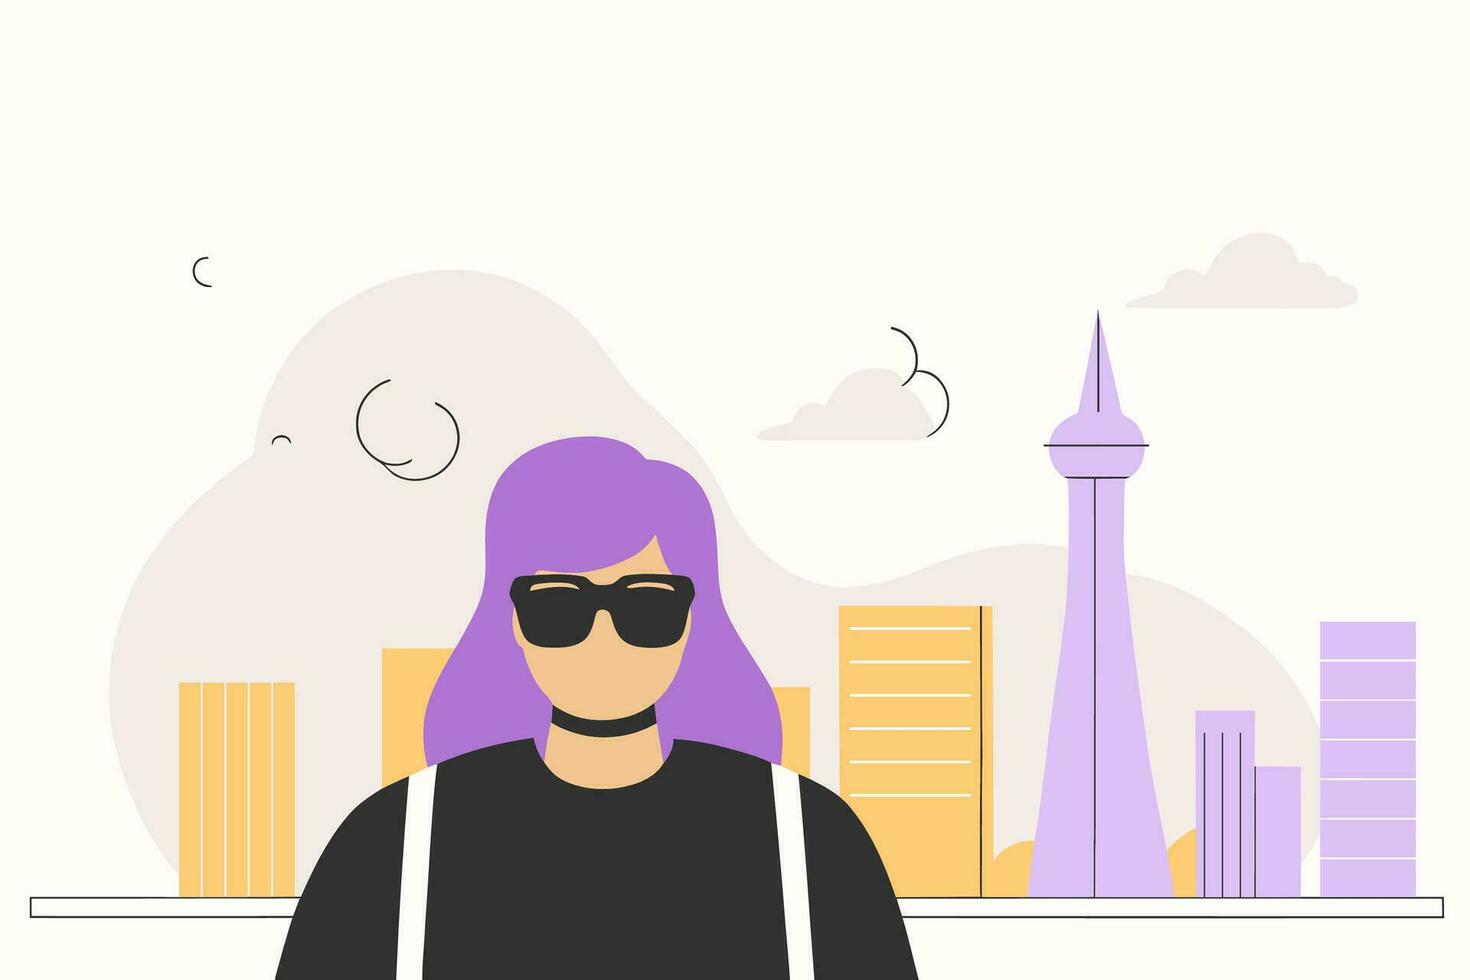 vrouw in zonnebril tegen de backdrop van een stadsgezicht, vlak vector illustratie.